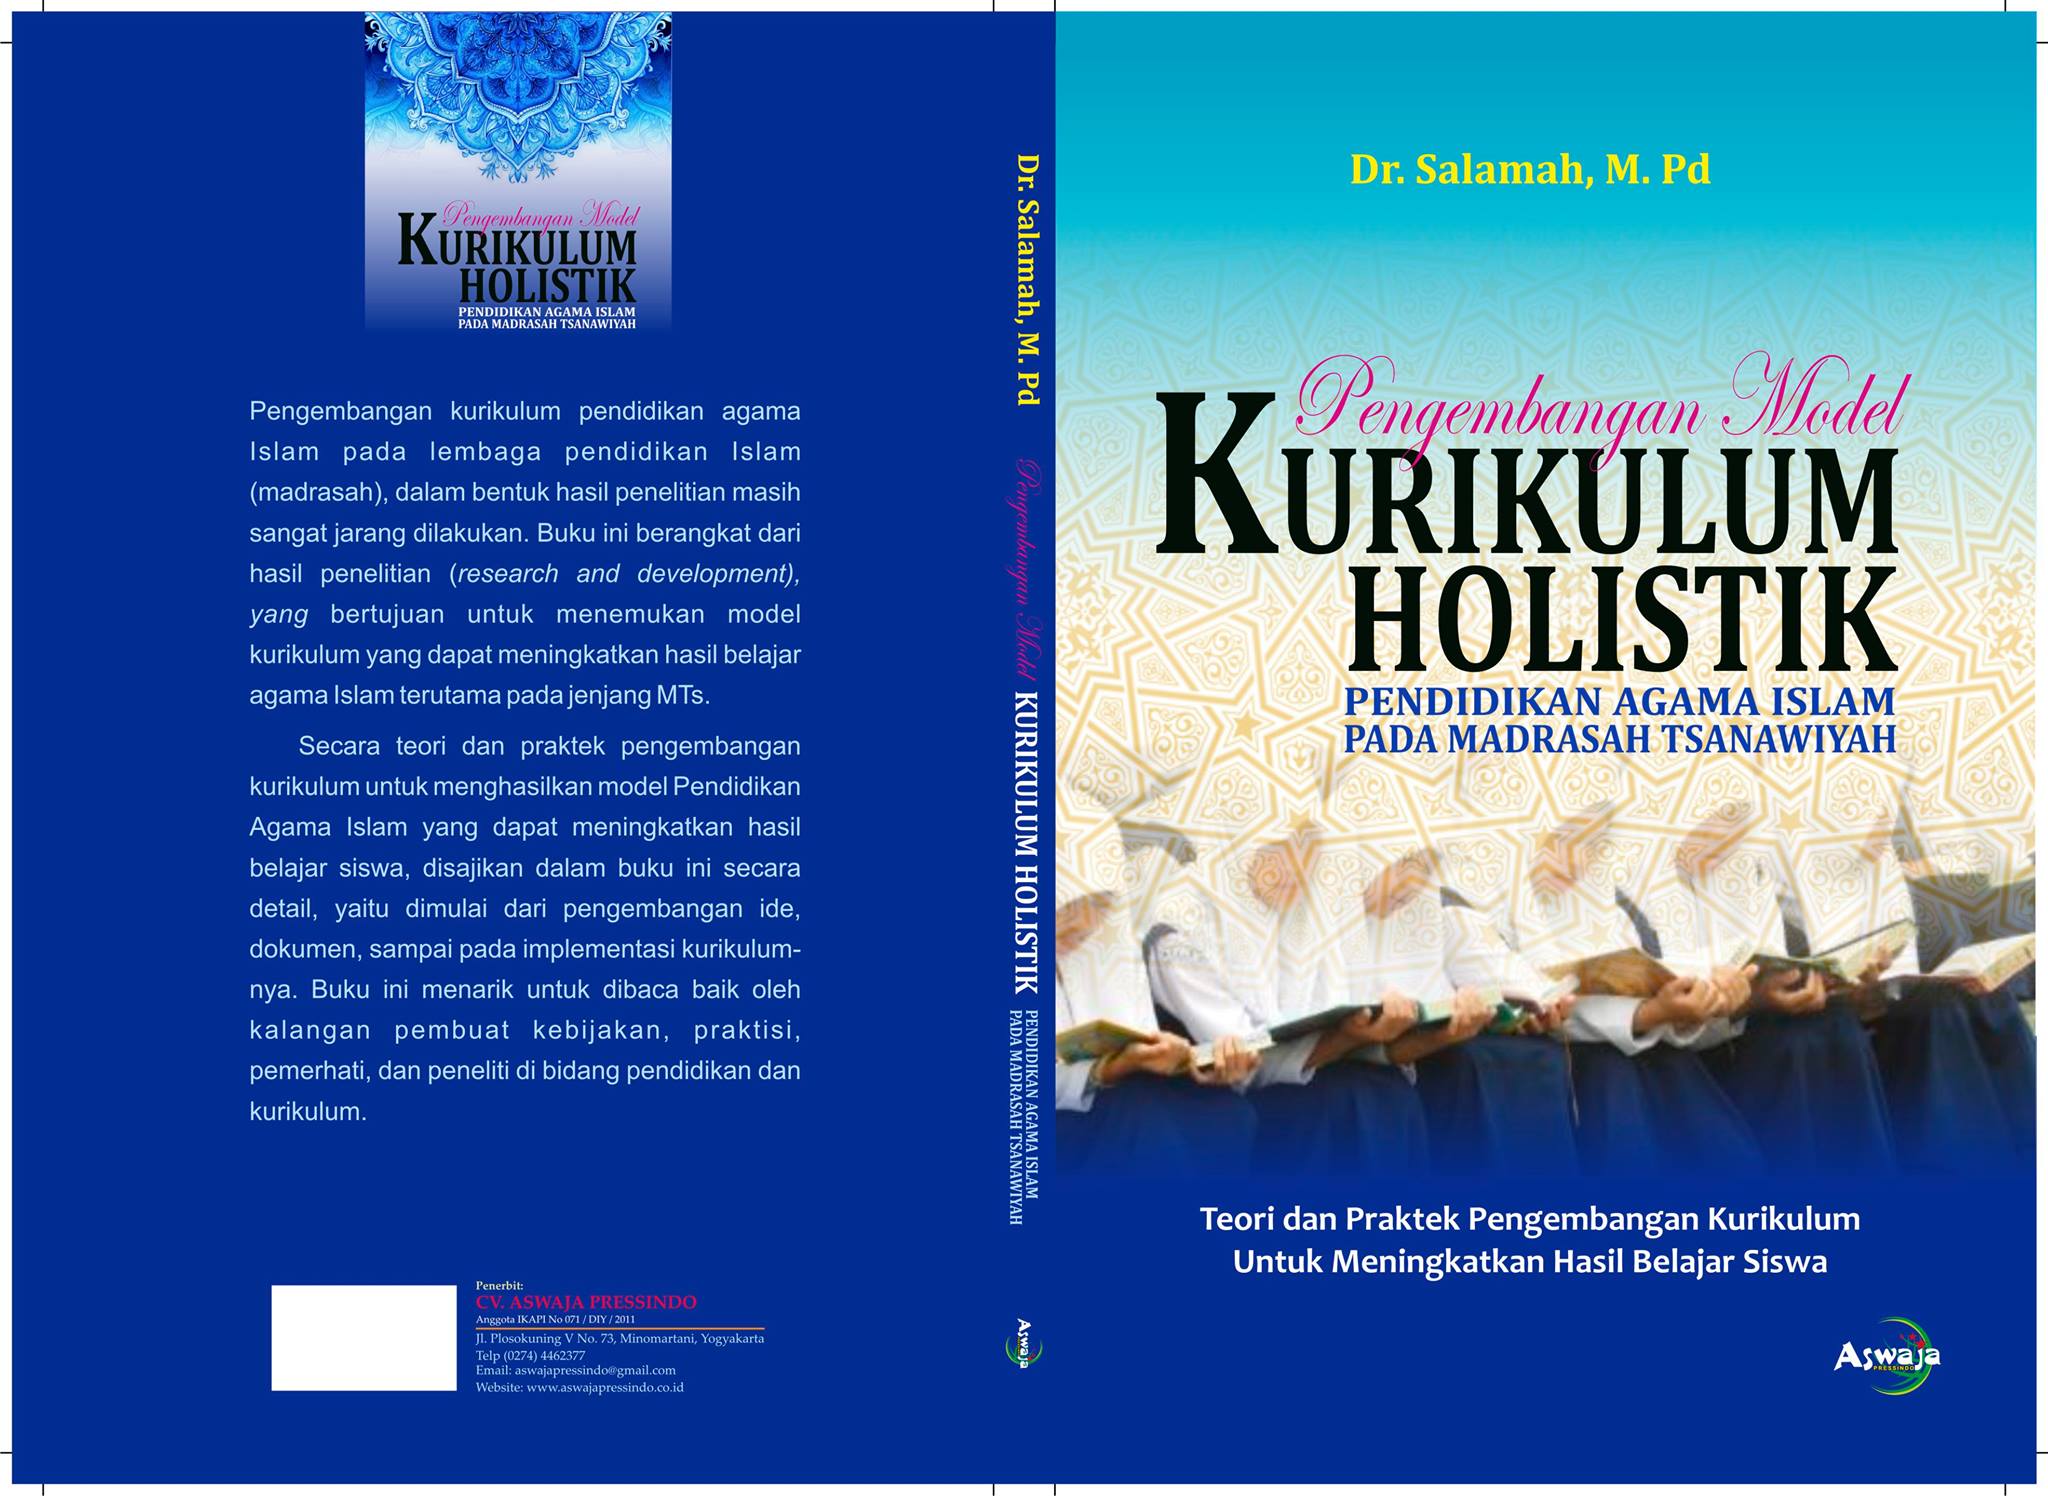 Pengembangan Model Kurikulum Holistik Pendidikan Agama Islam pada